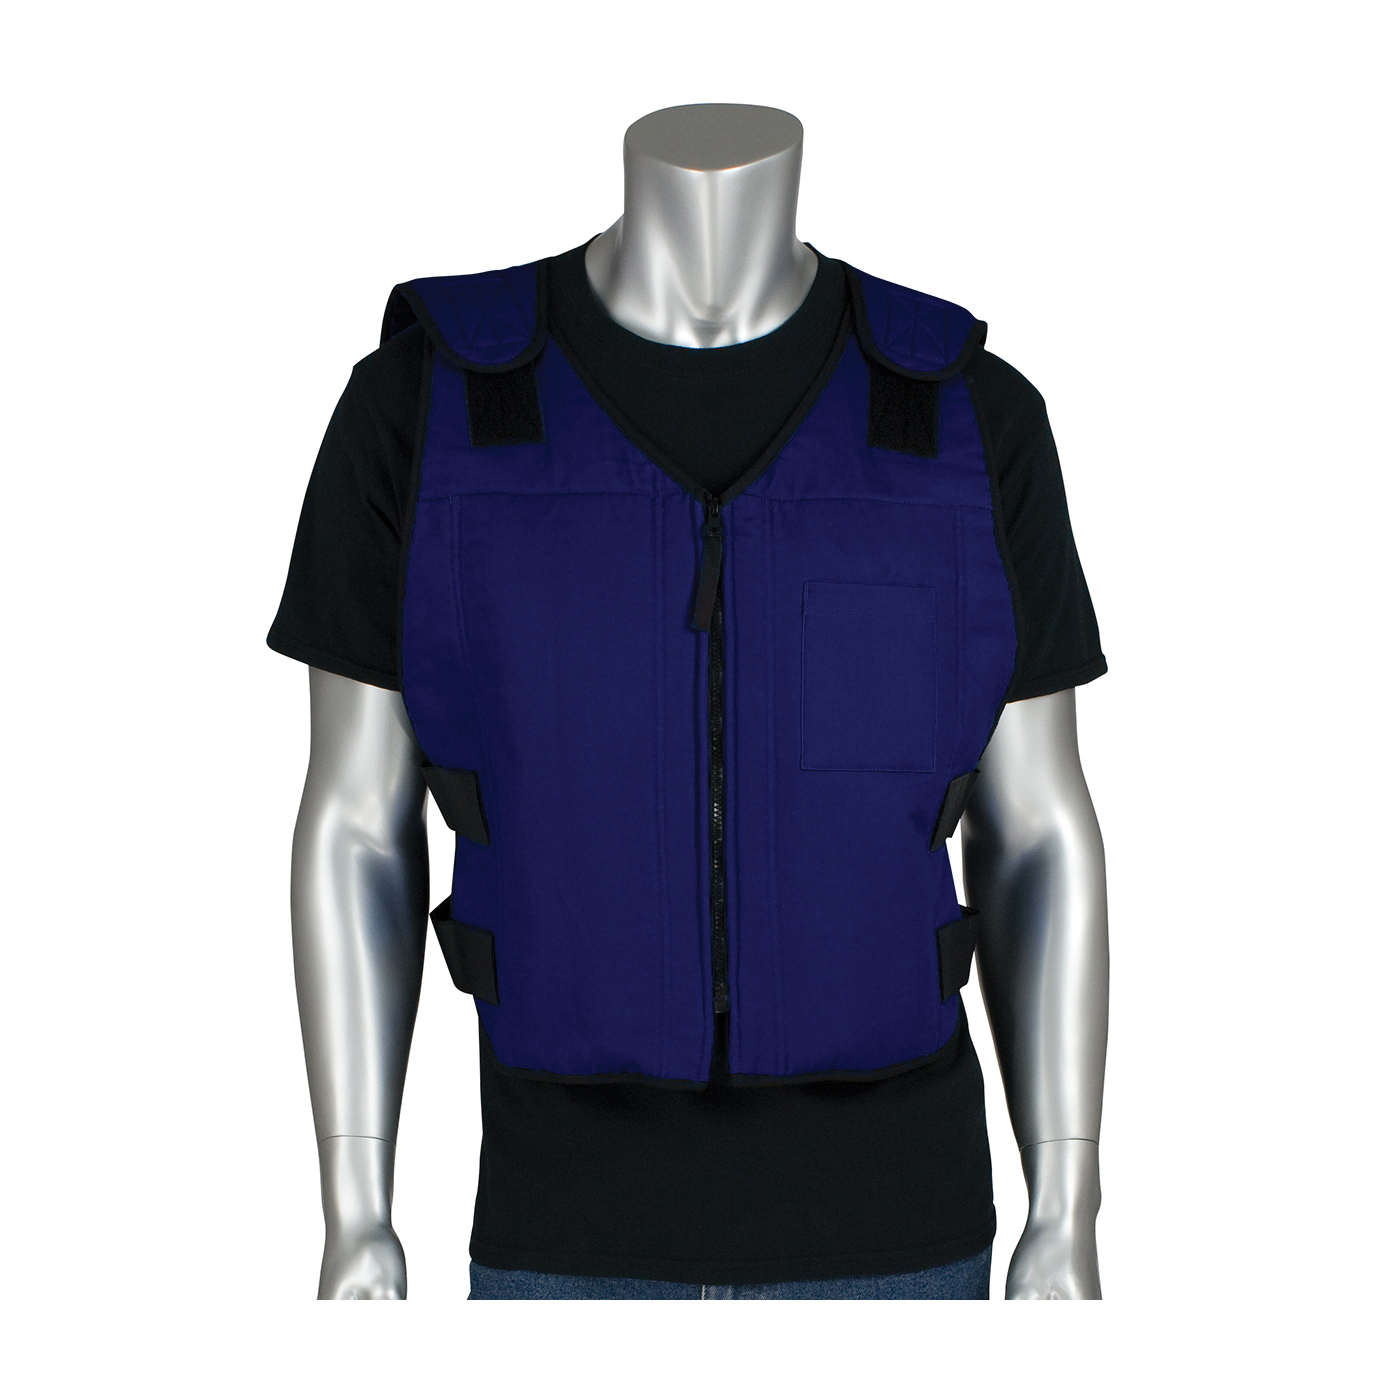 PIP® 390-EZFRPC-M/L EZ-Cool® Active Fit Premium FR Phase Change Cooling Vest With Insulated Cooler Bag, M/L Size, Zipper Closure, Cotton/Nylon, Navy Blue